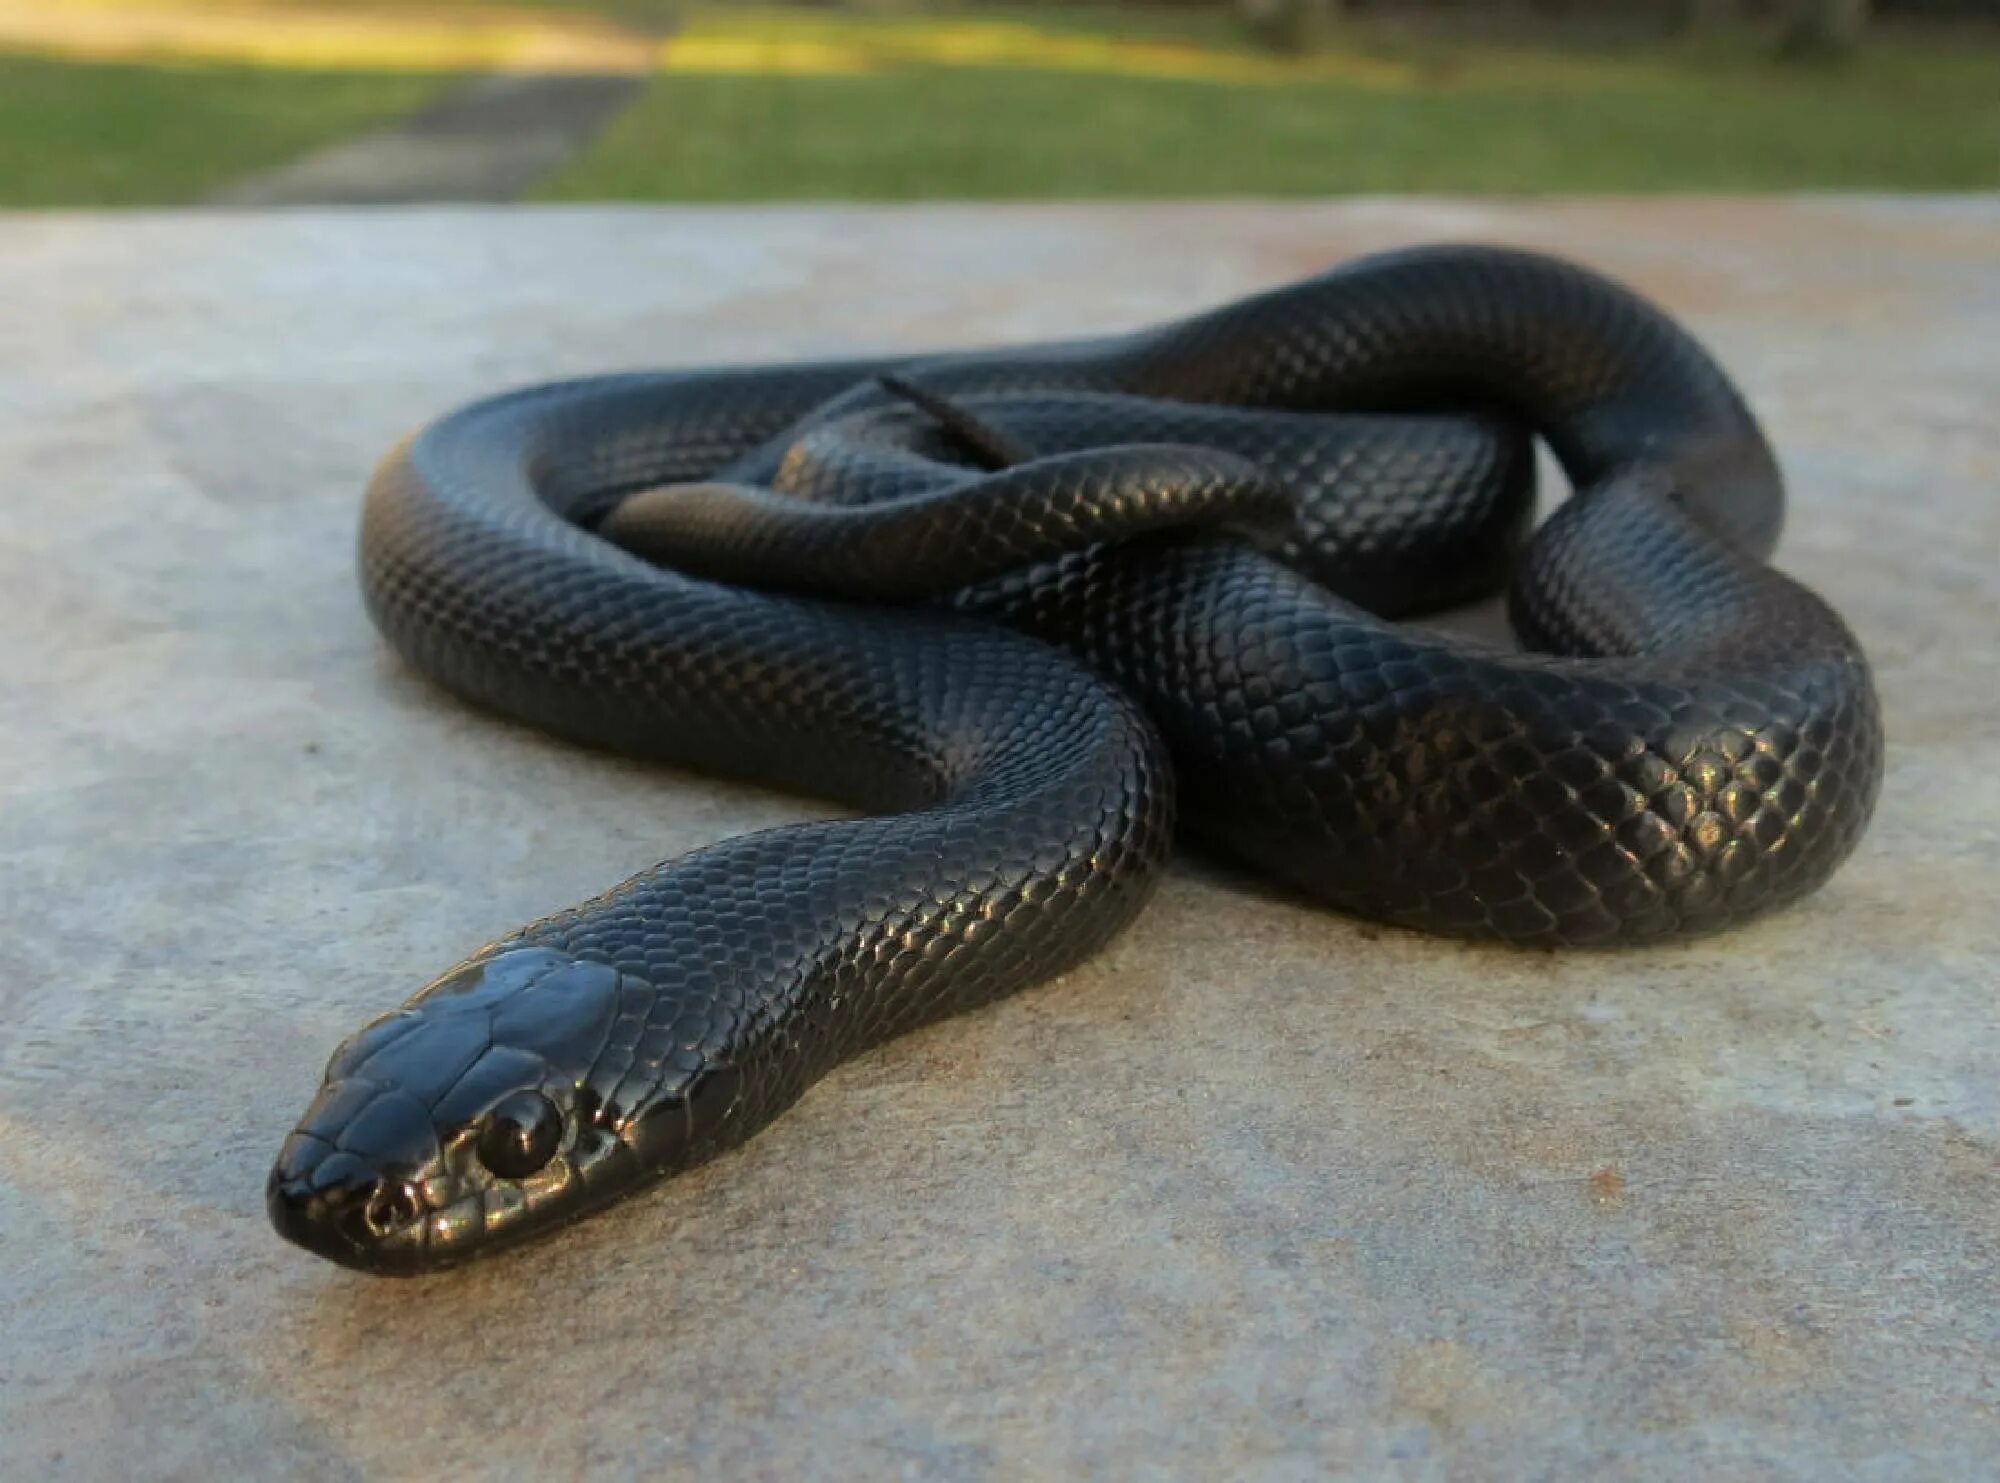 Темного змейка. Королевская змея нигрита. Чёрная Королевская змея нигрита. Полоз нигрита. Змея Нигритта (Королевская “Nigrita”).